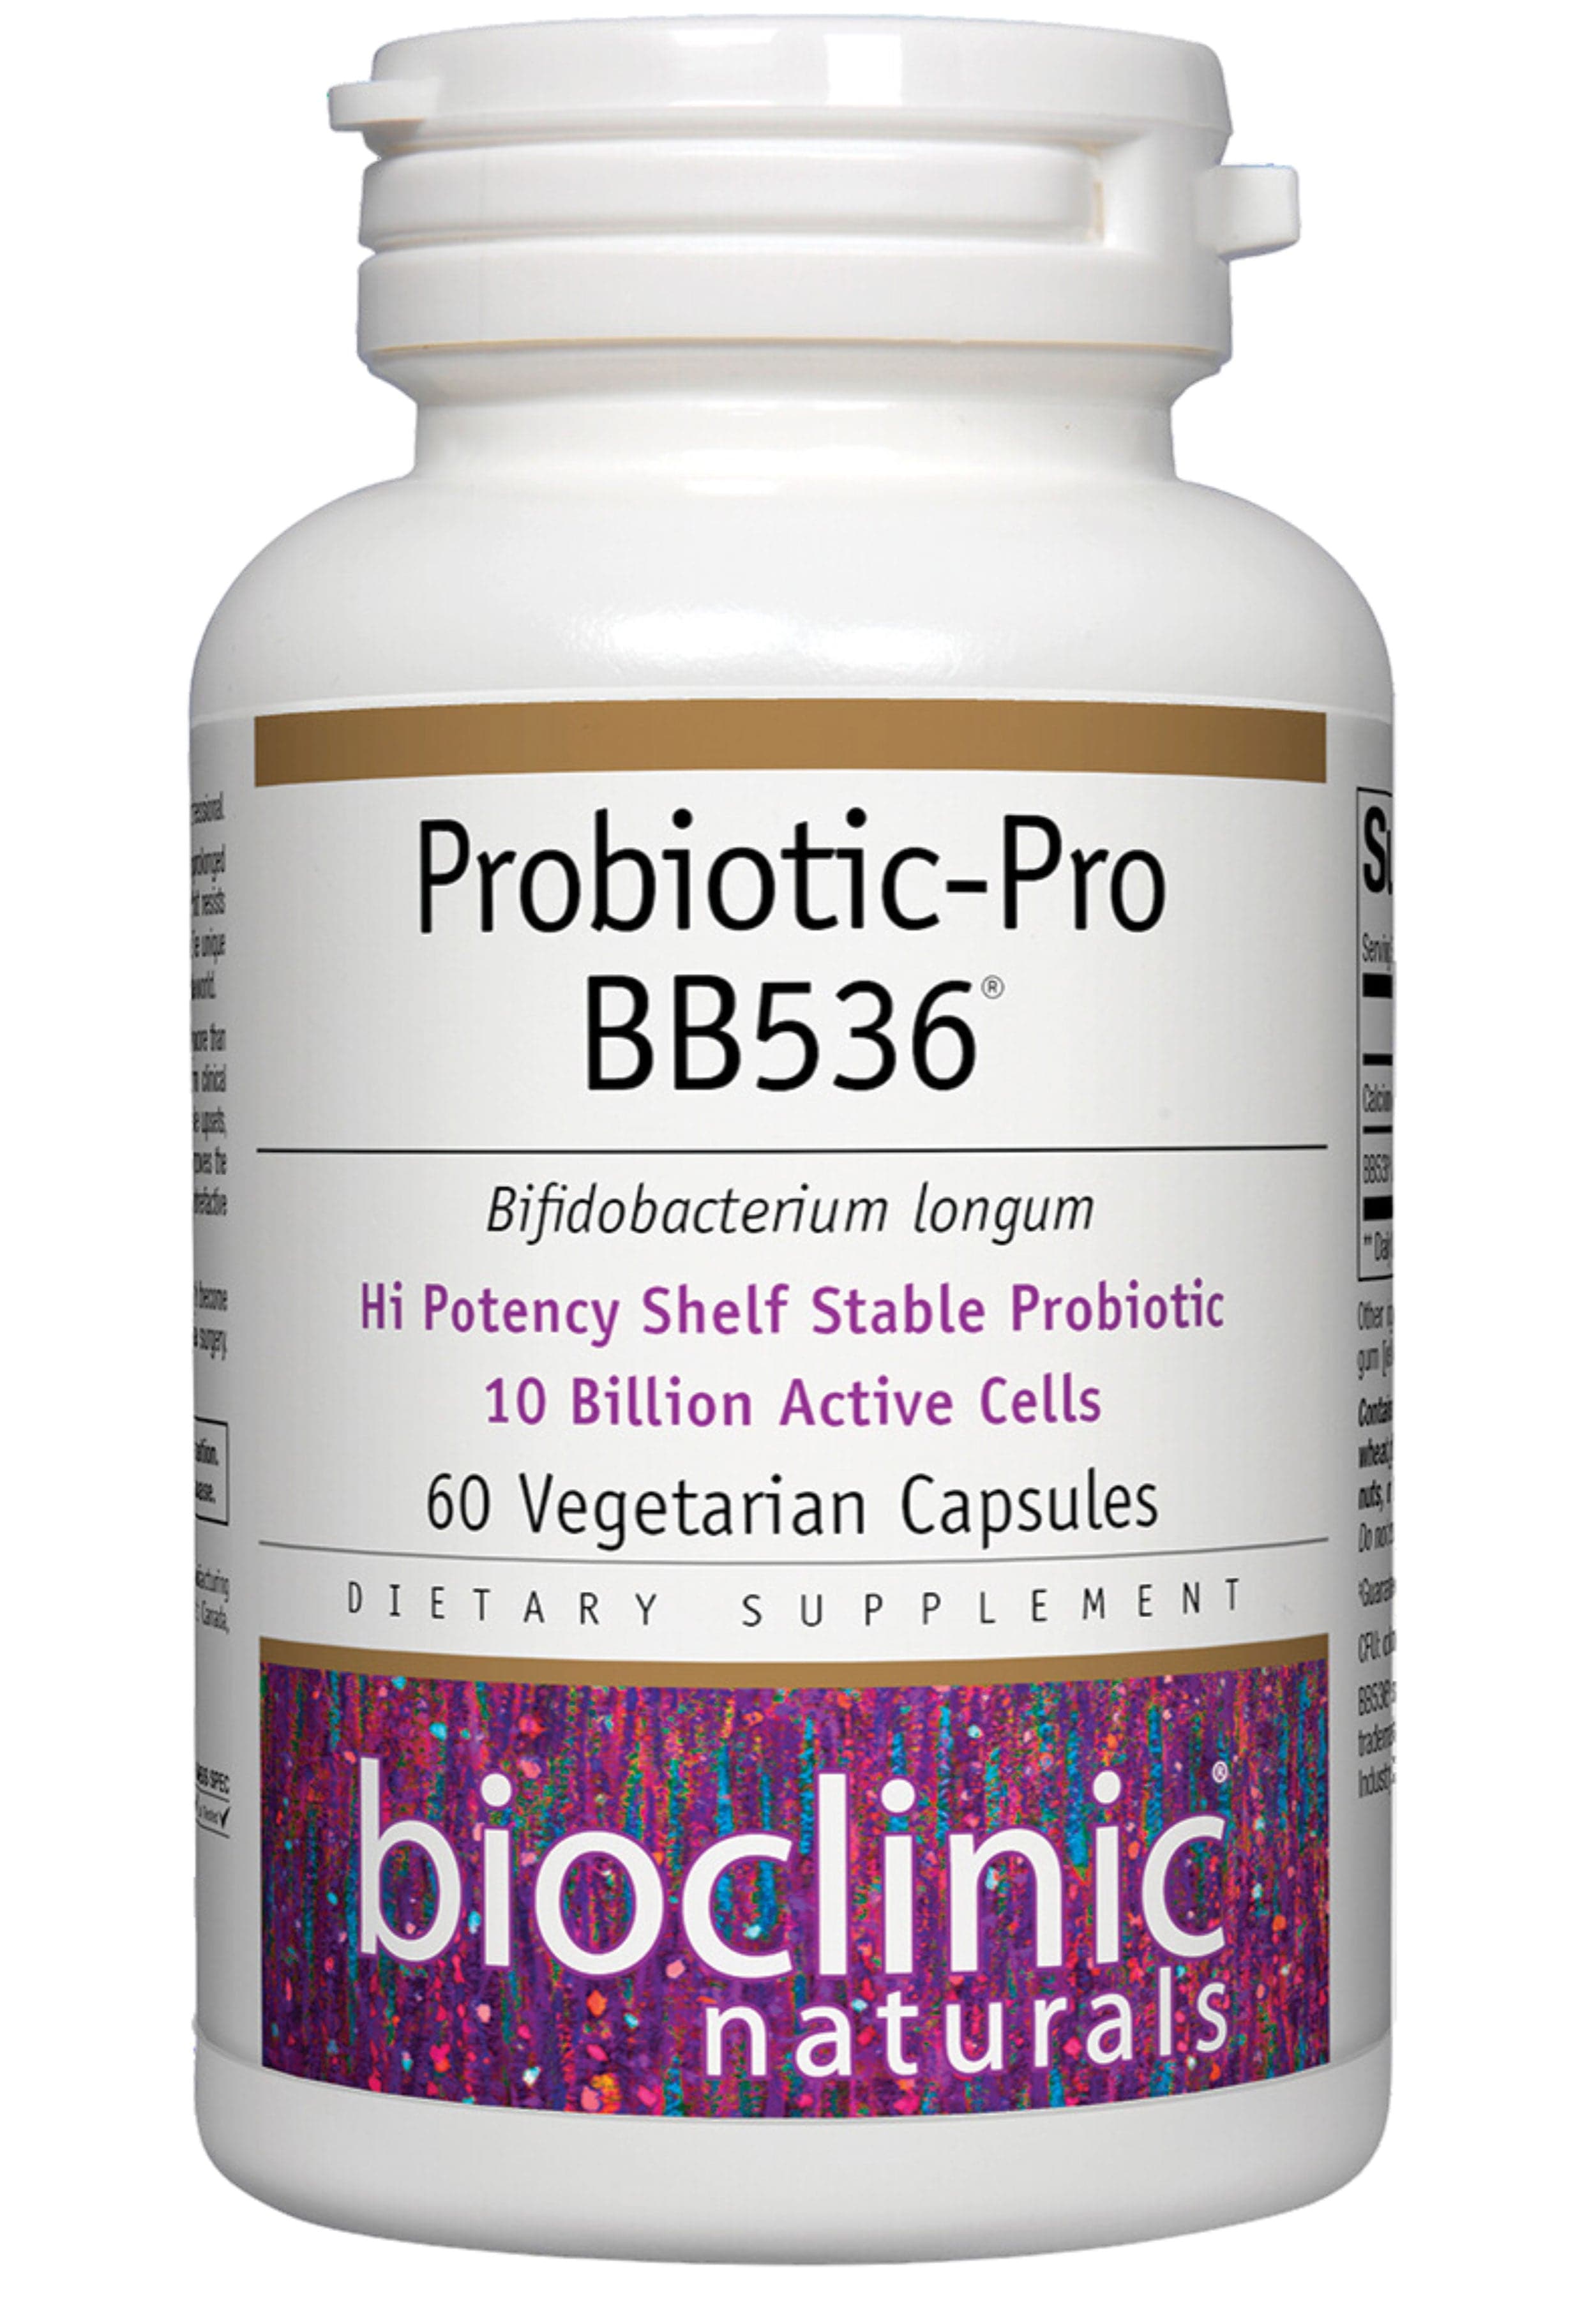 Bioclinic Naturals Probiotic-Pro BB536